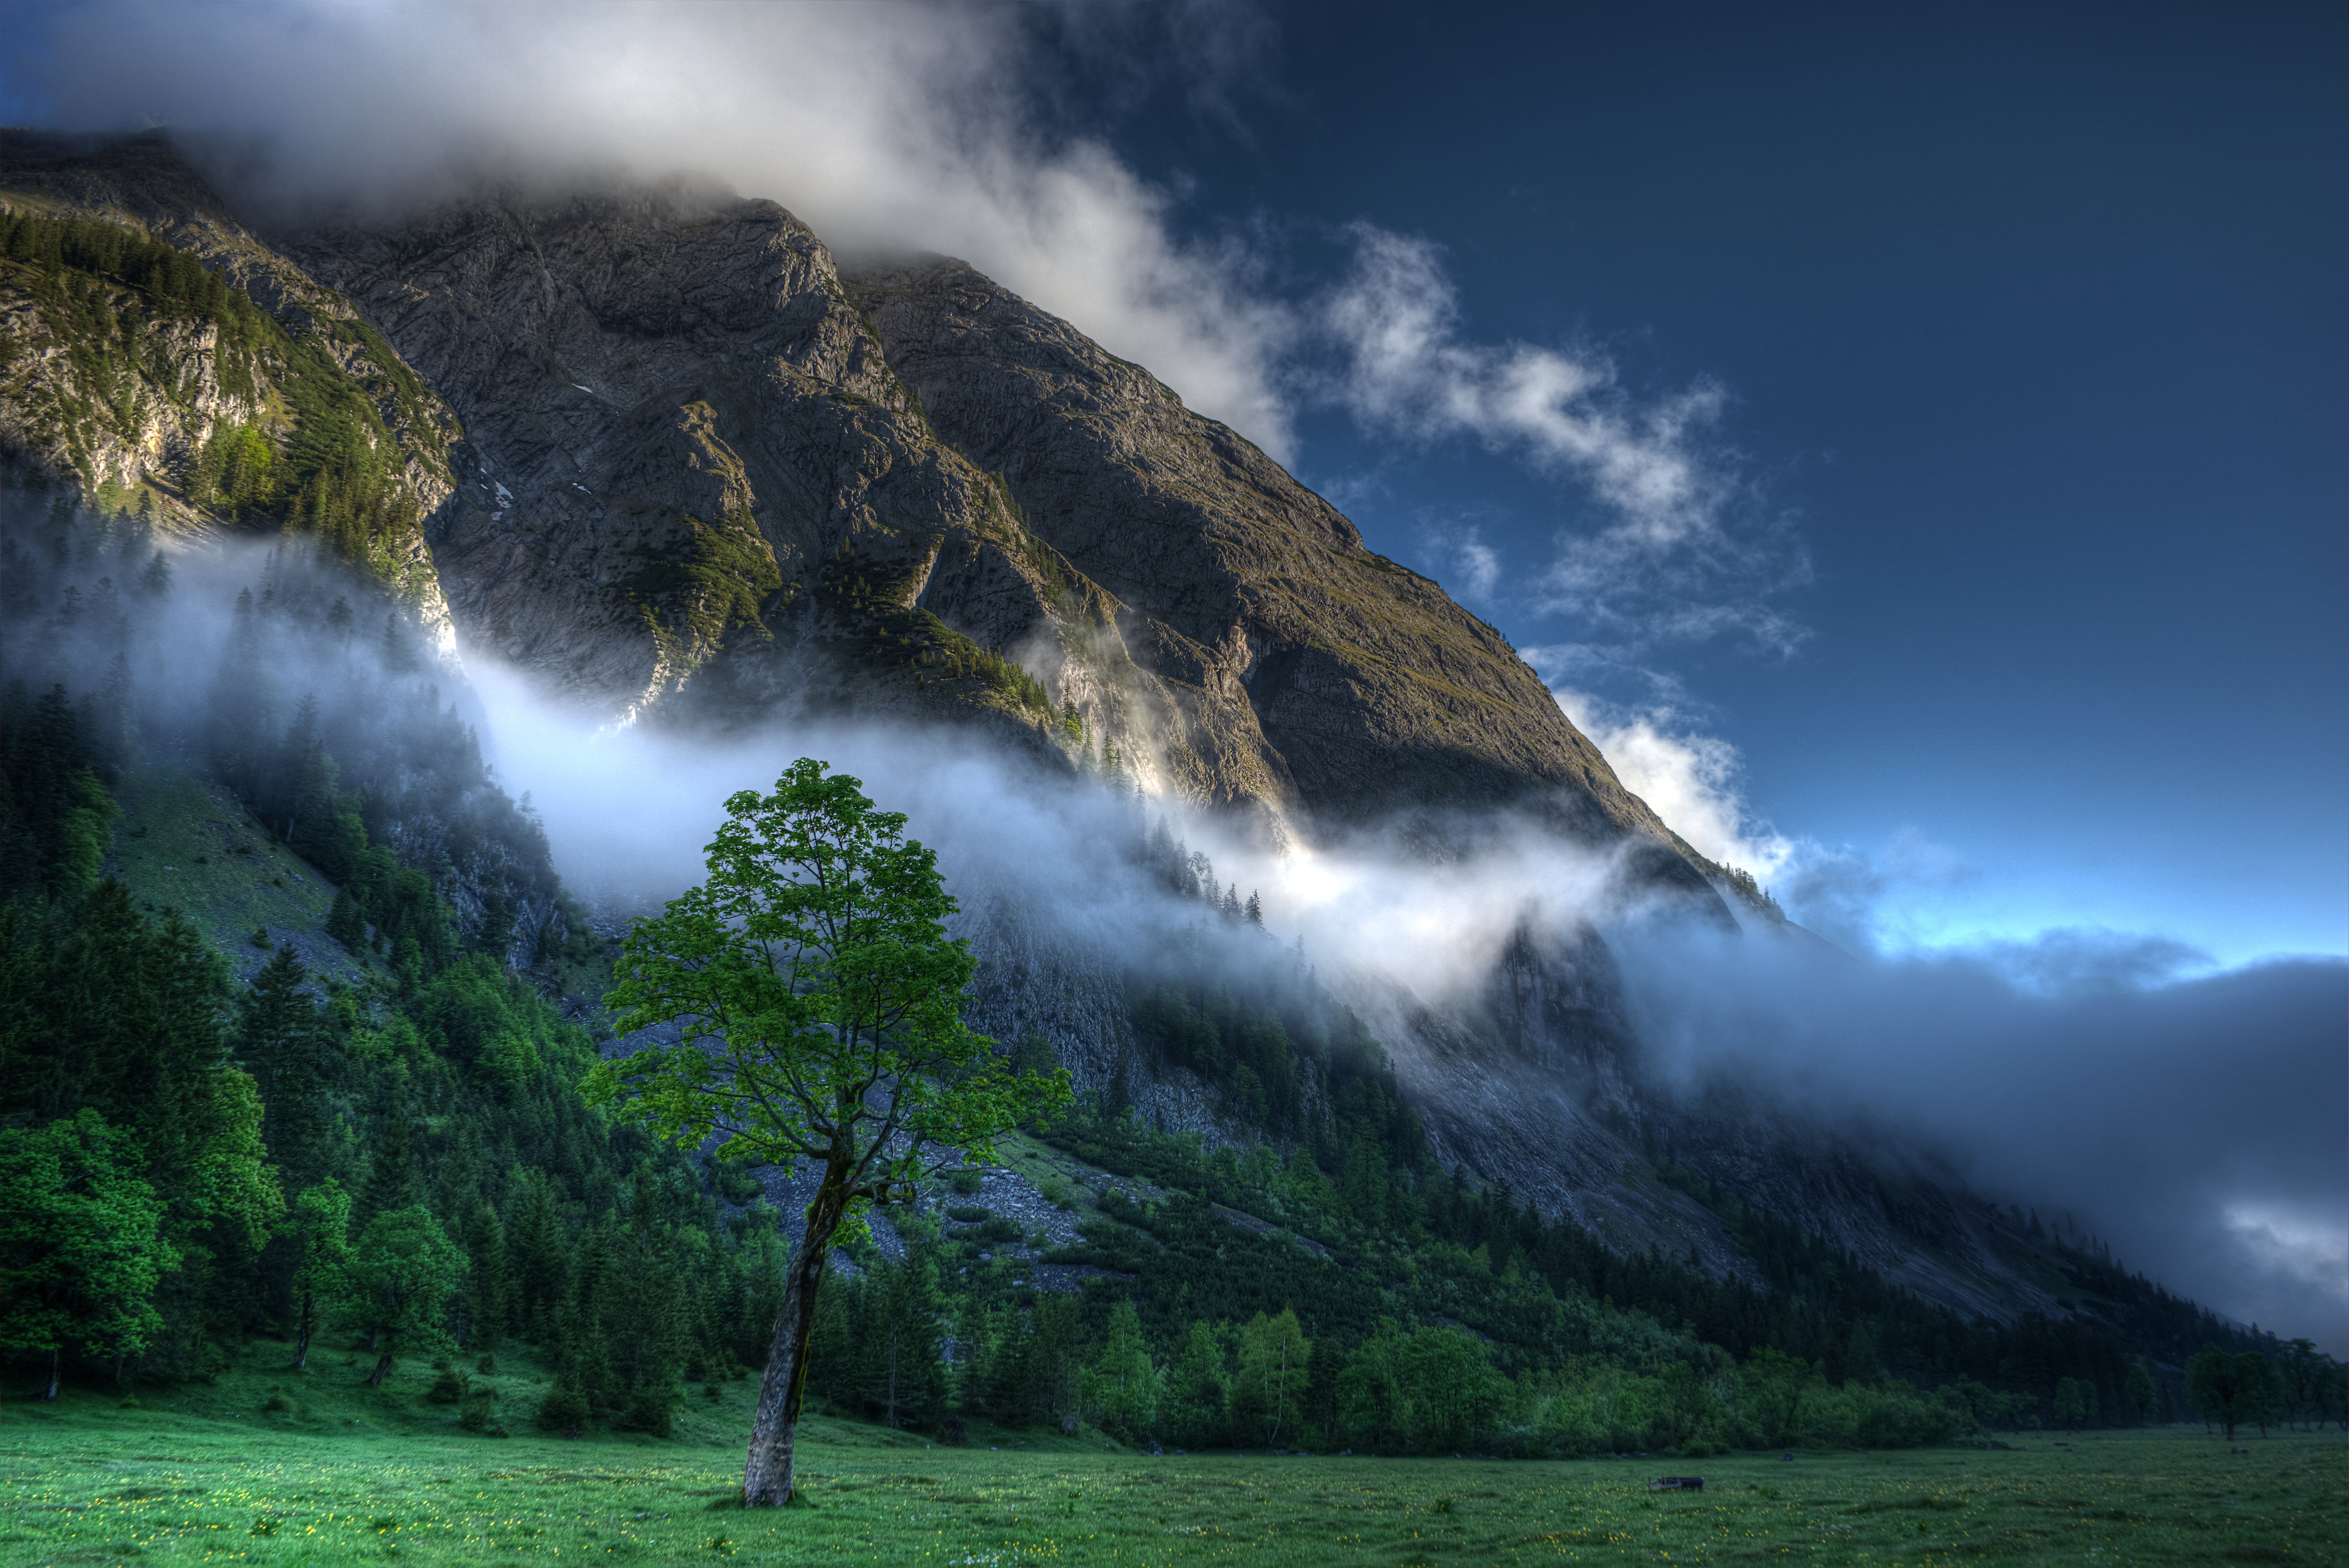 landscape foggy mountain during daytime, SOE, clouds, berge, karwendel  alps